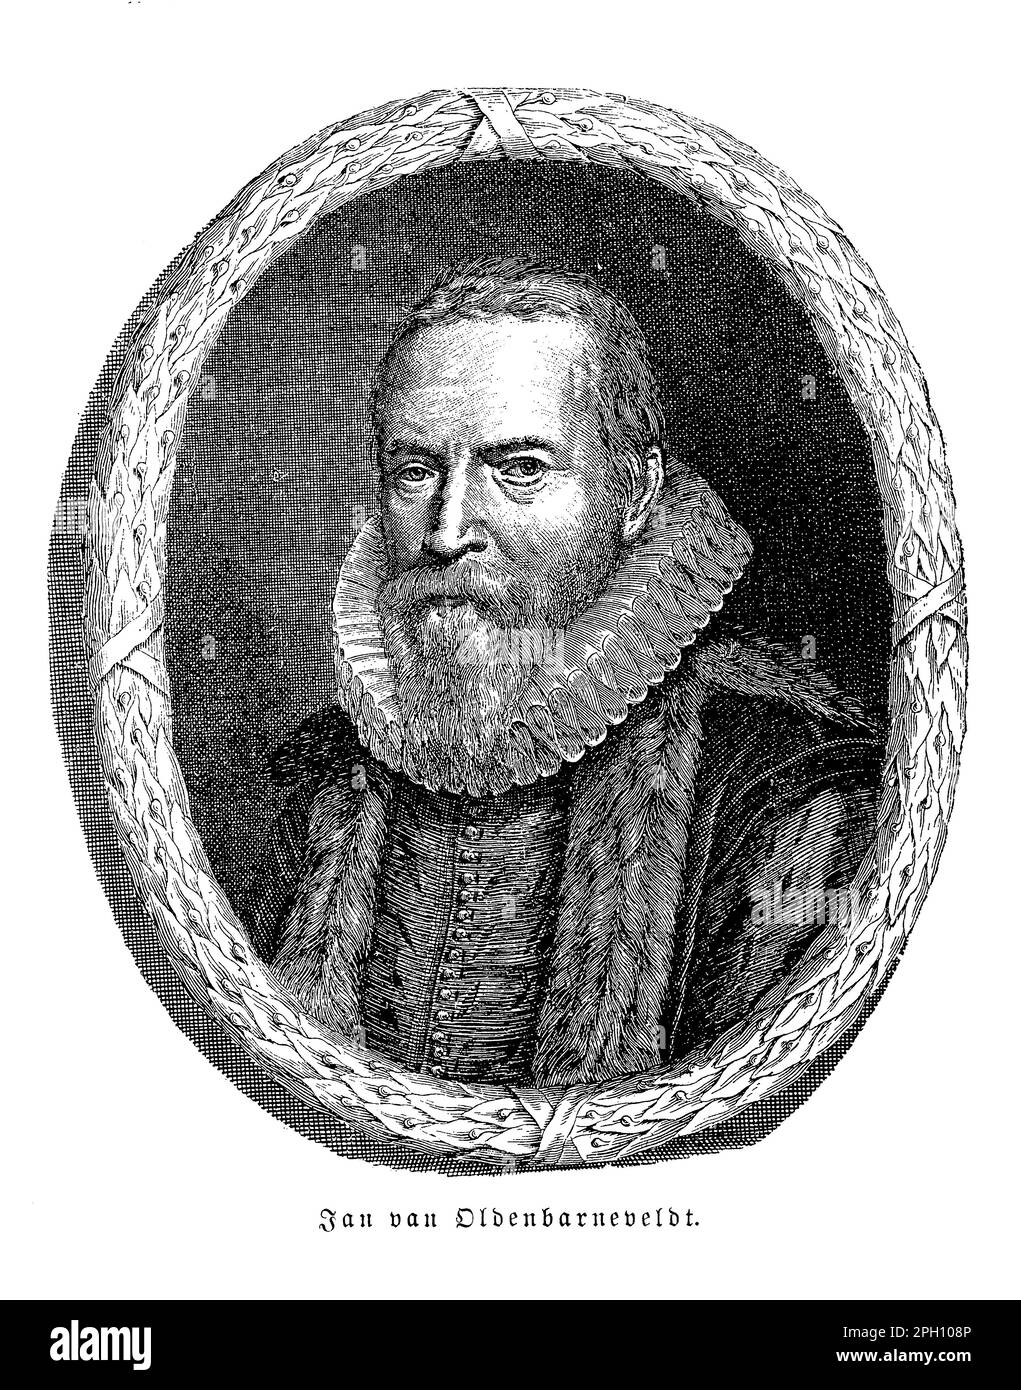 Jan van Oldenbarneveldt (1547-1619) è stato un . Ha servito come landsadvocaat (grande pensionato) per oltre 30 anni, modellando la politica olandese e le relazioni estere. Tuttavia, il suo conflitto con il principe Maurits ha portato al suo arresto ed esecuzione. Foto Stock